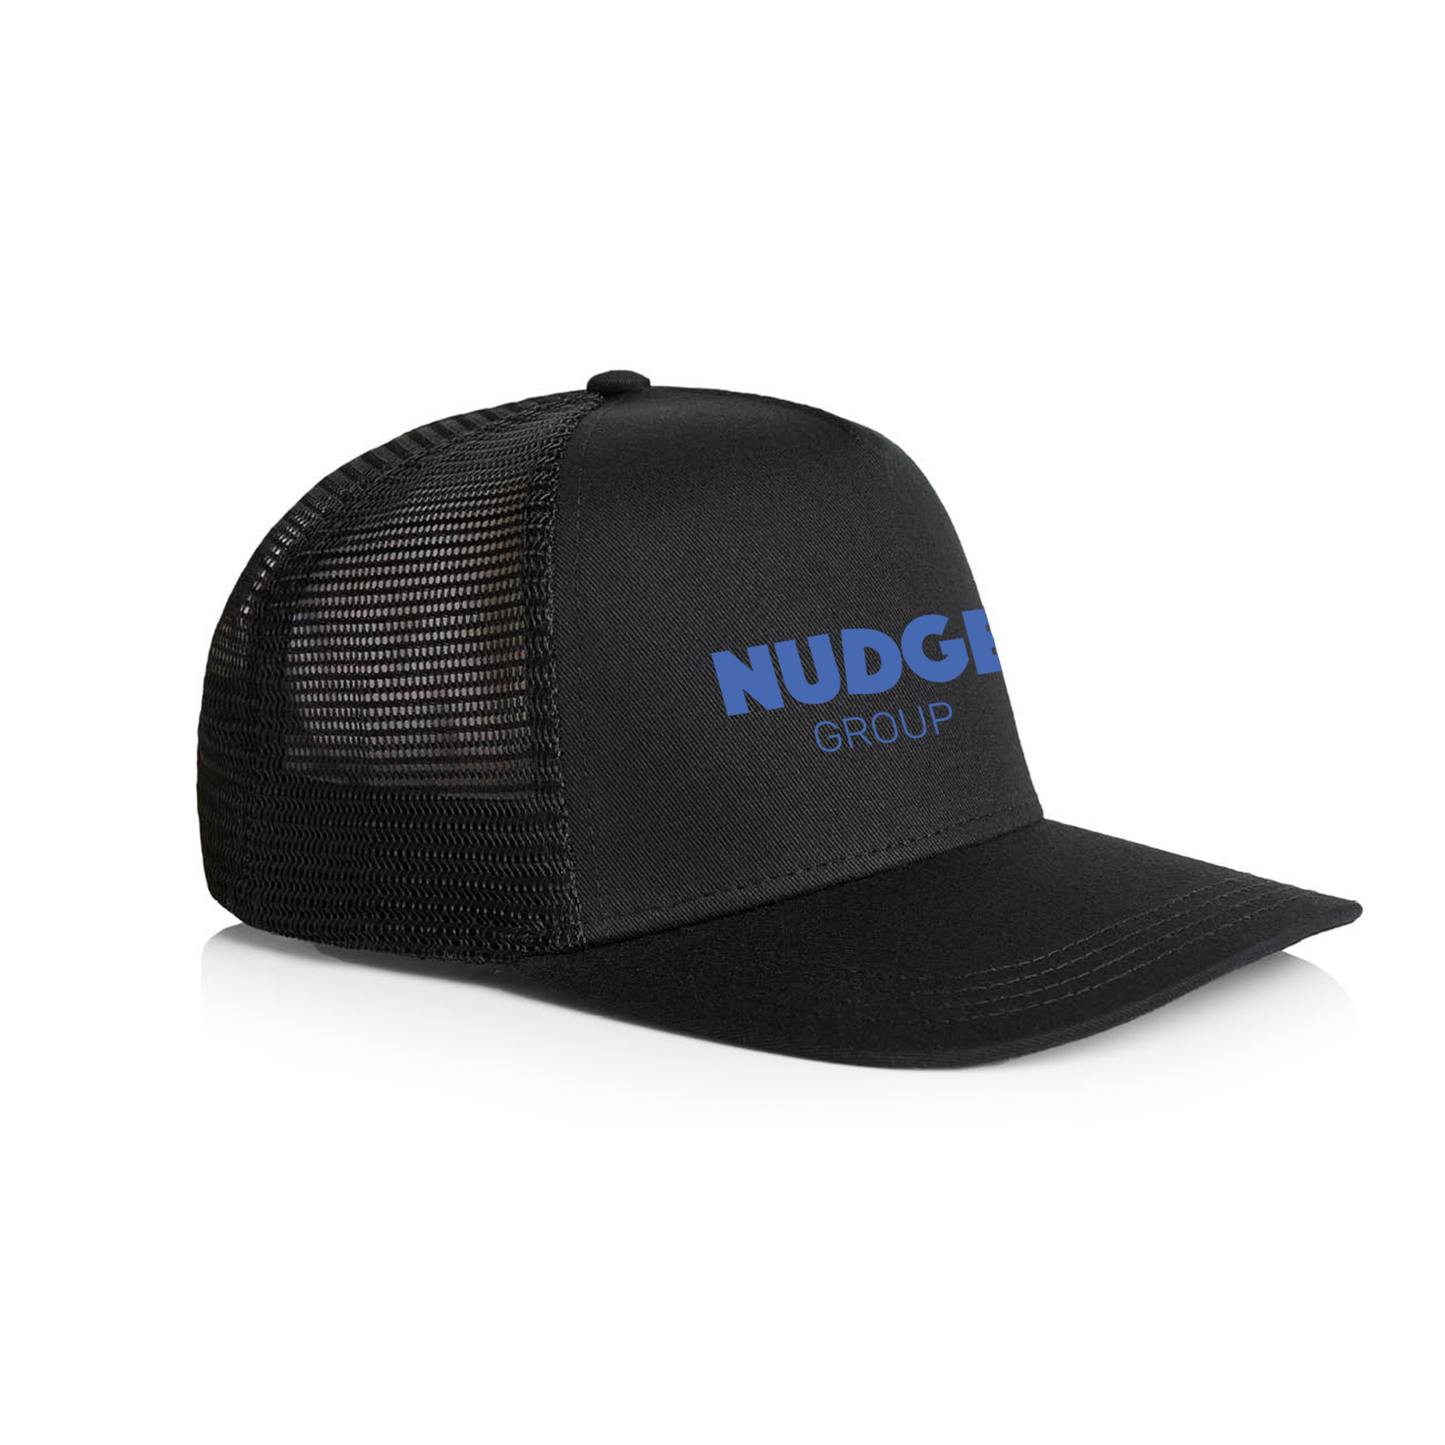 NUDGE Group Trucker Cap